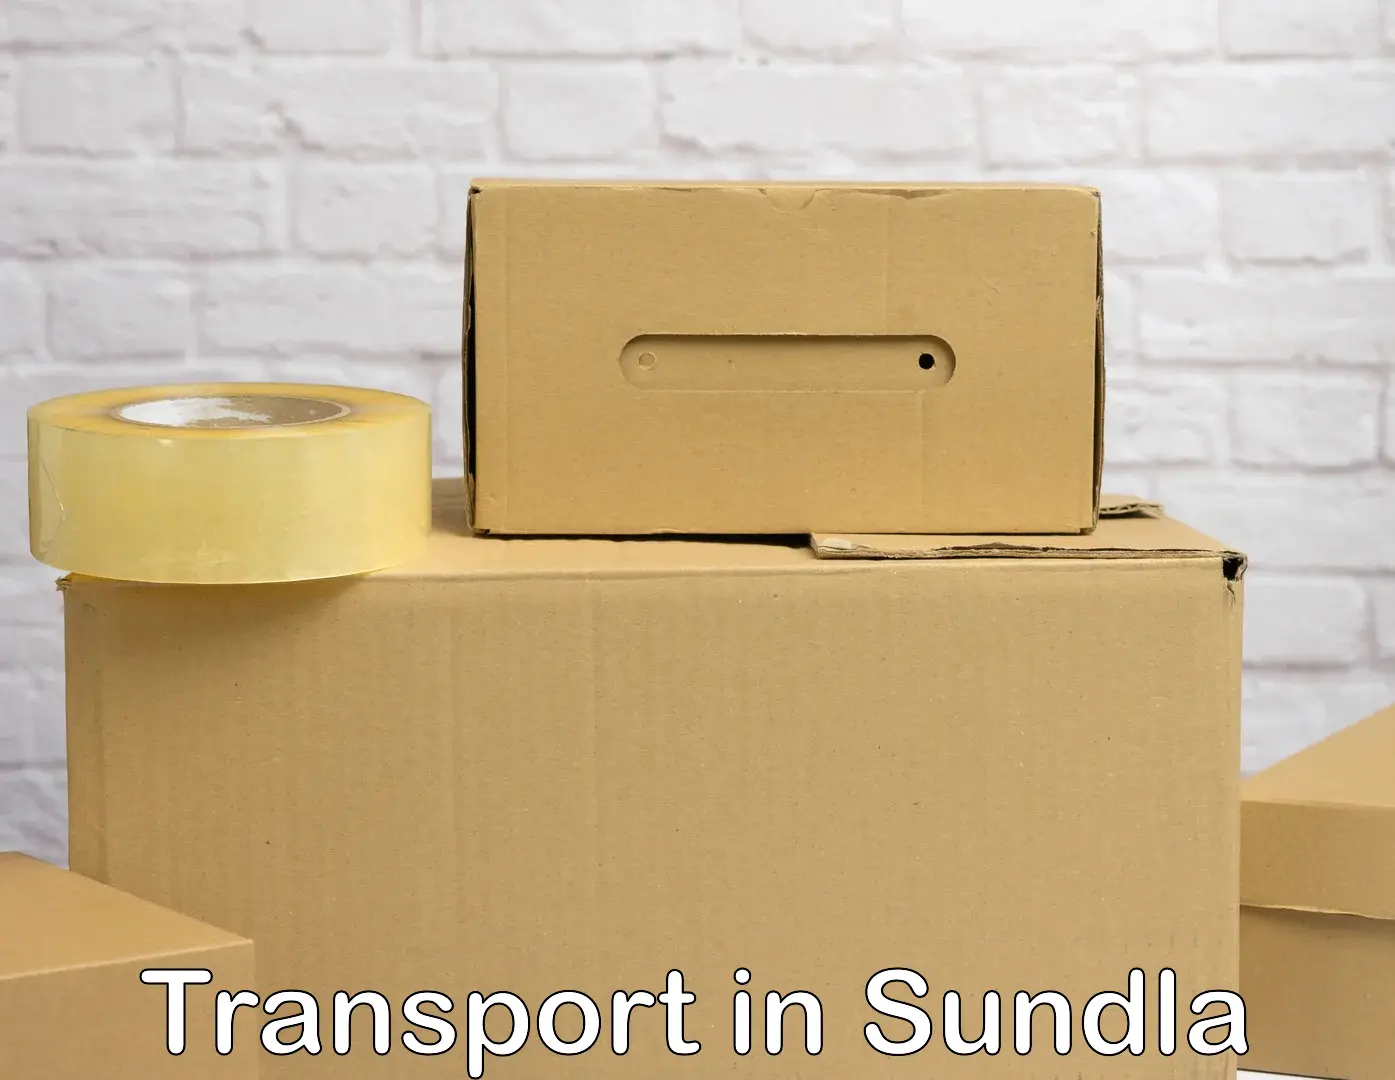 Interstate transport services in Sundla